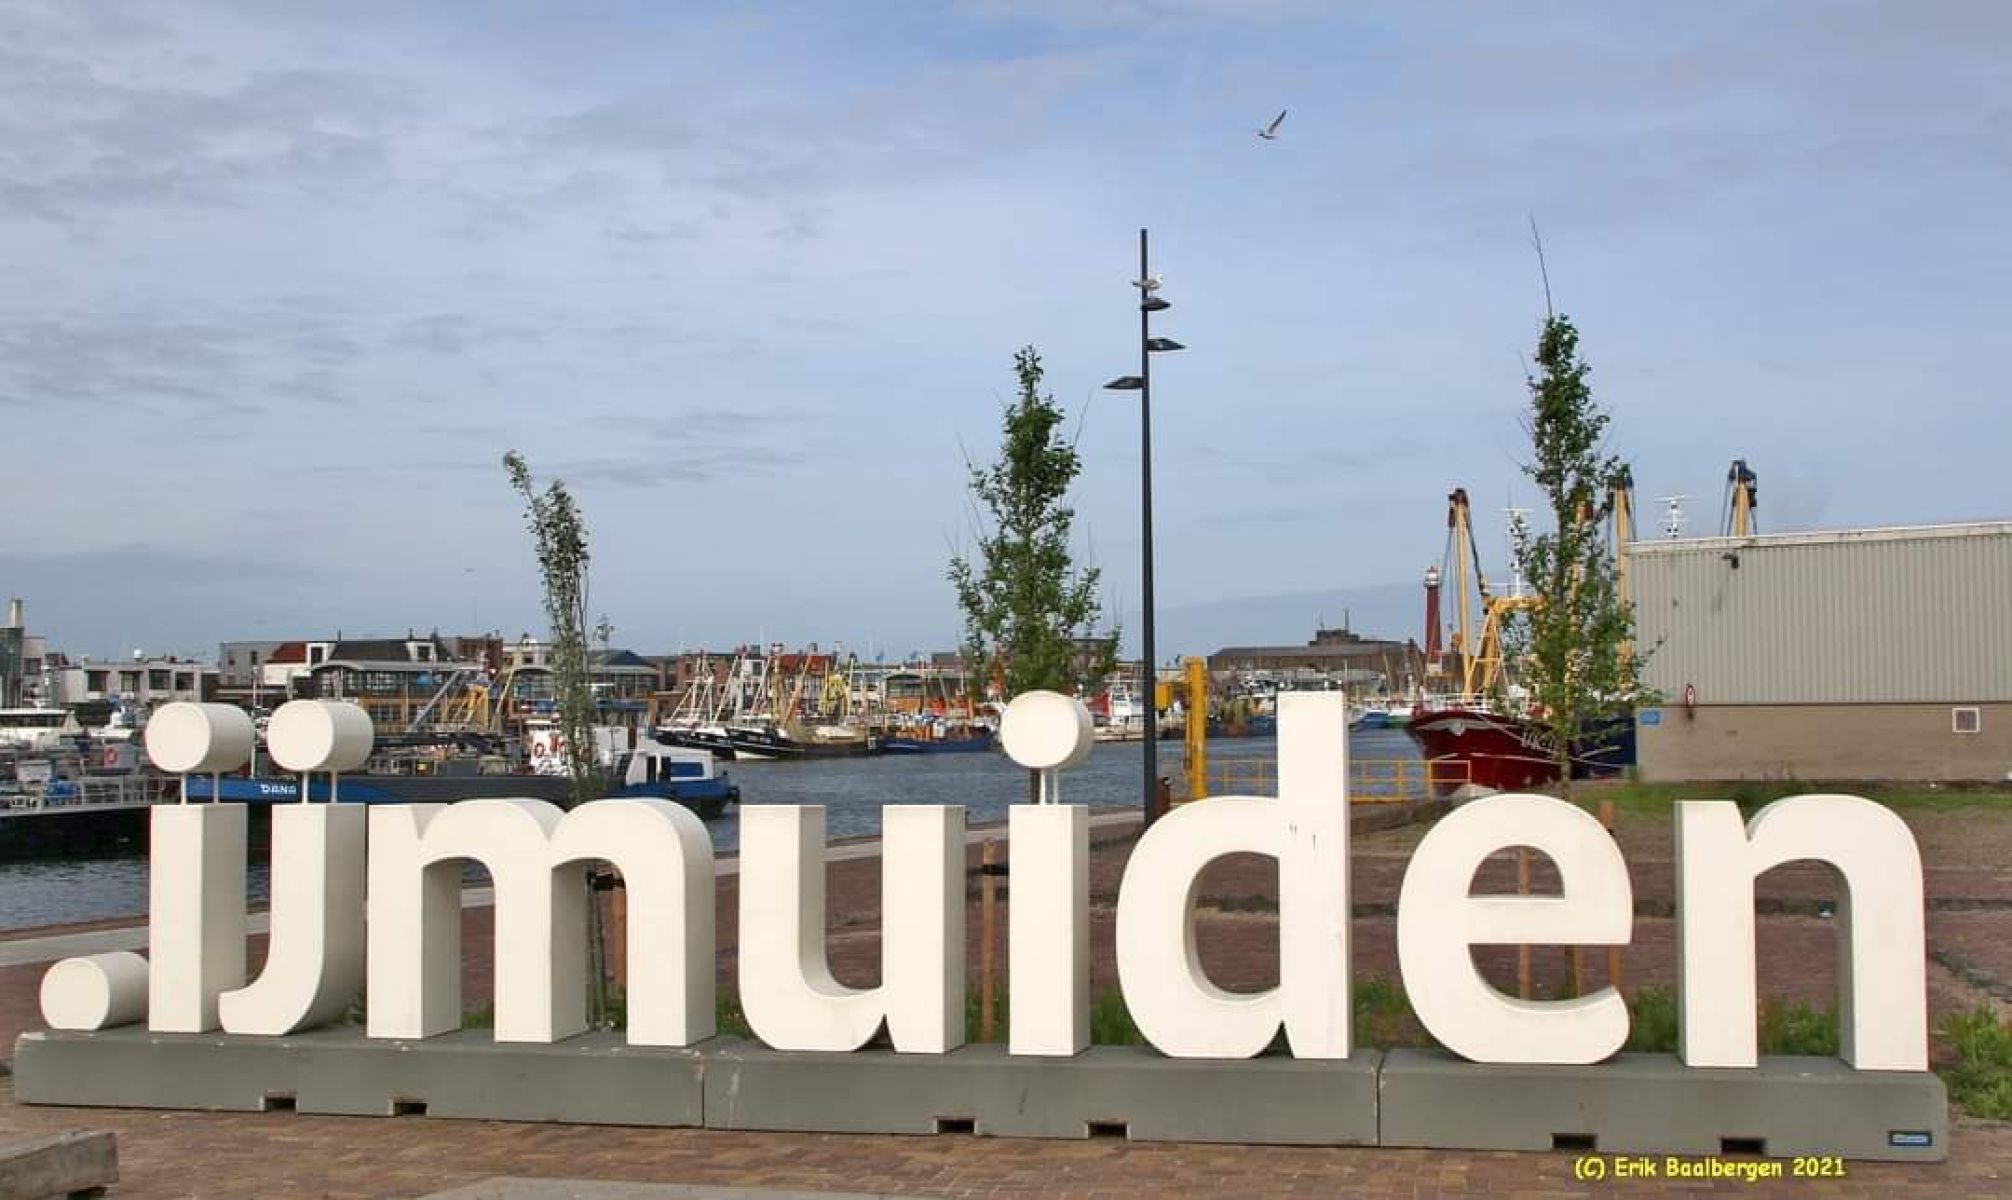 tekst IJmuiden geplaatst in haven tbv gemeente IJmijden